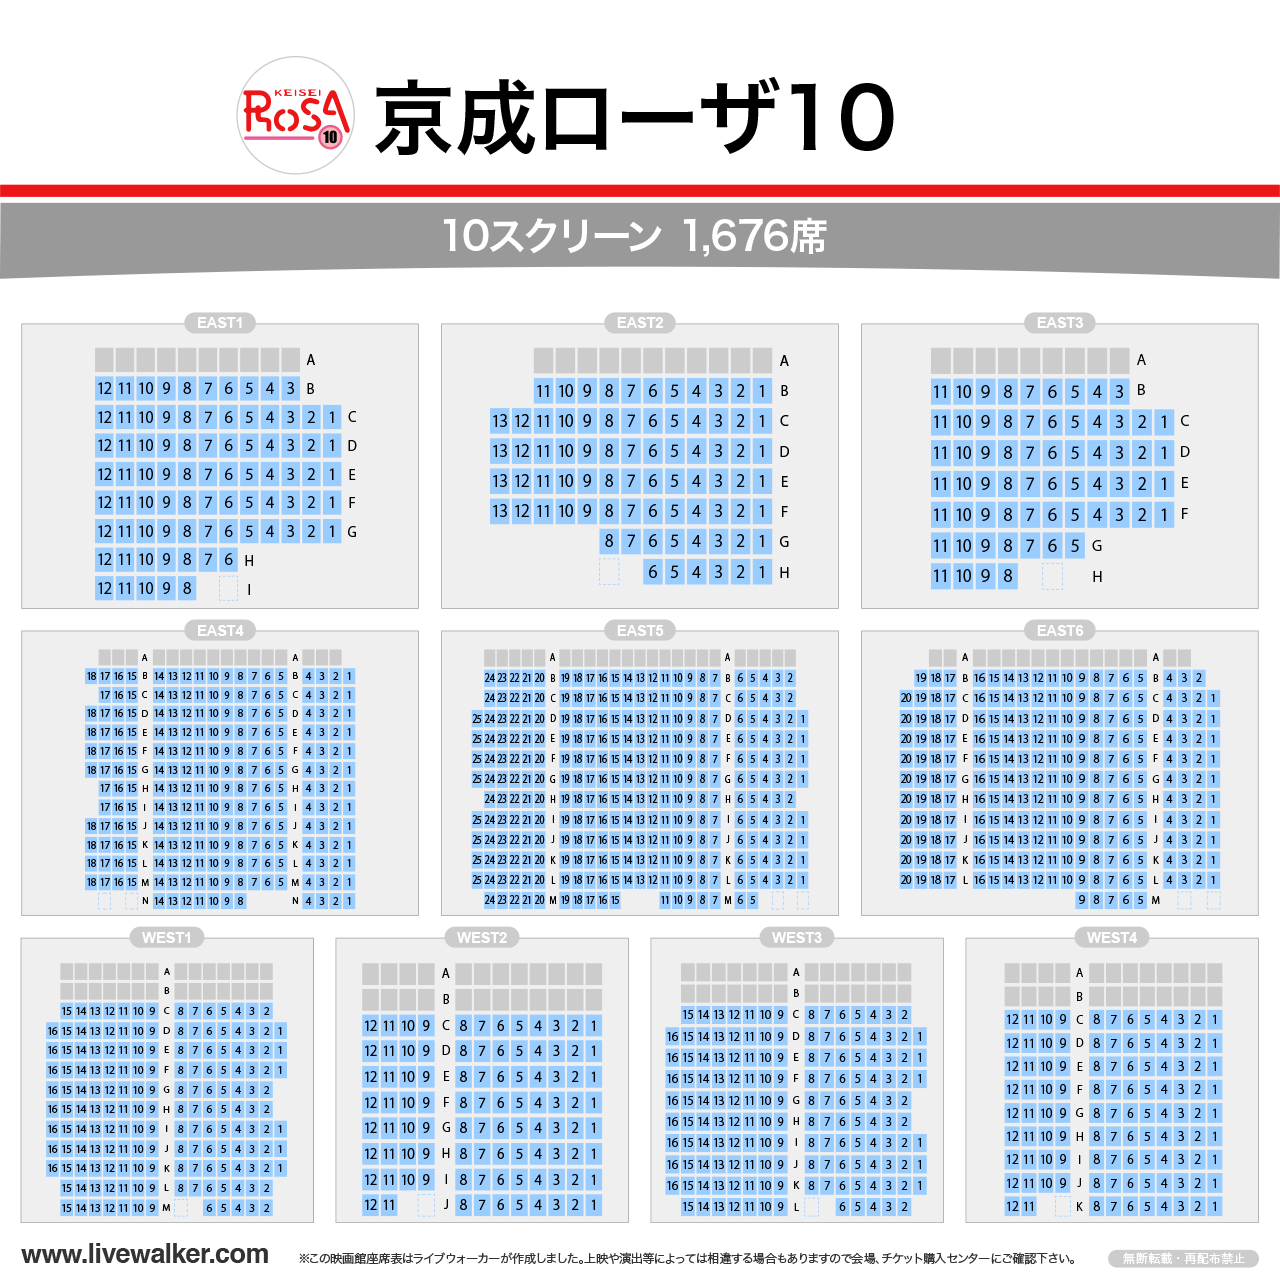 京成ローザ10シネマの座席表